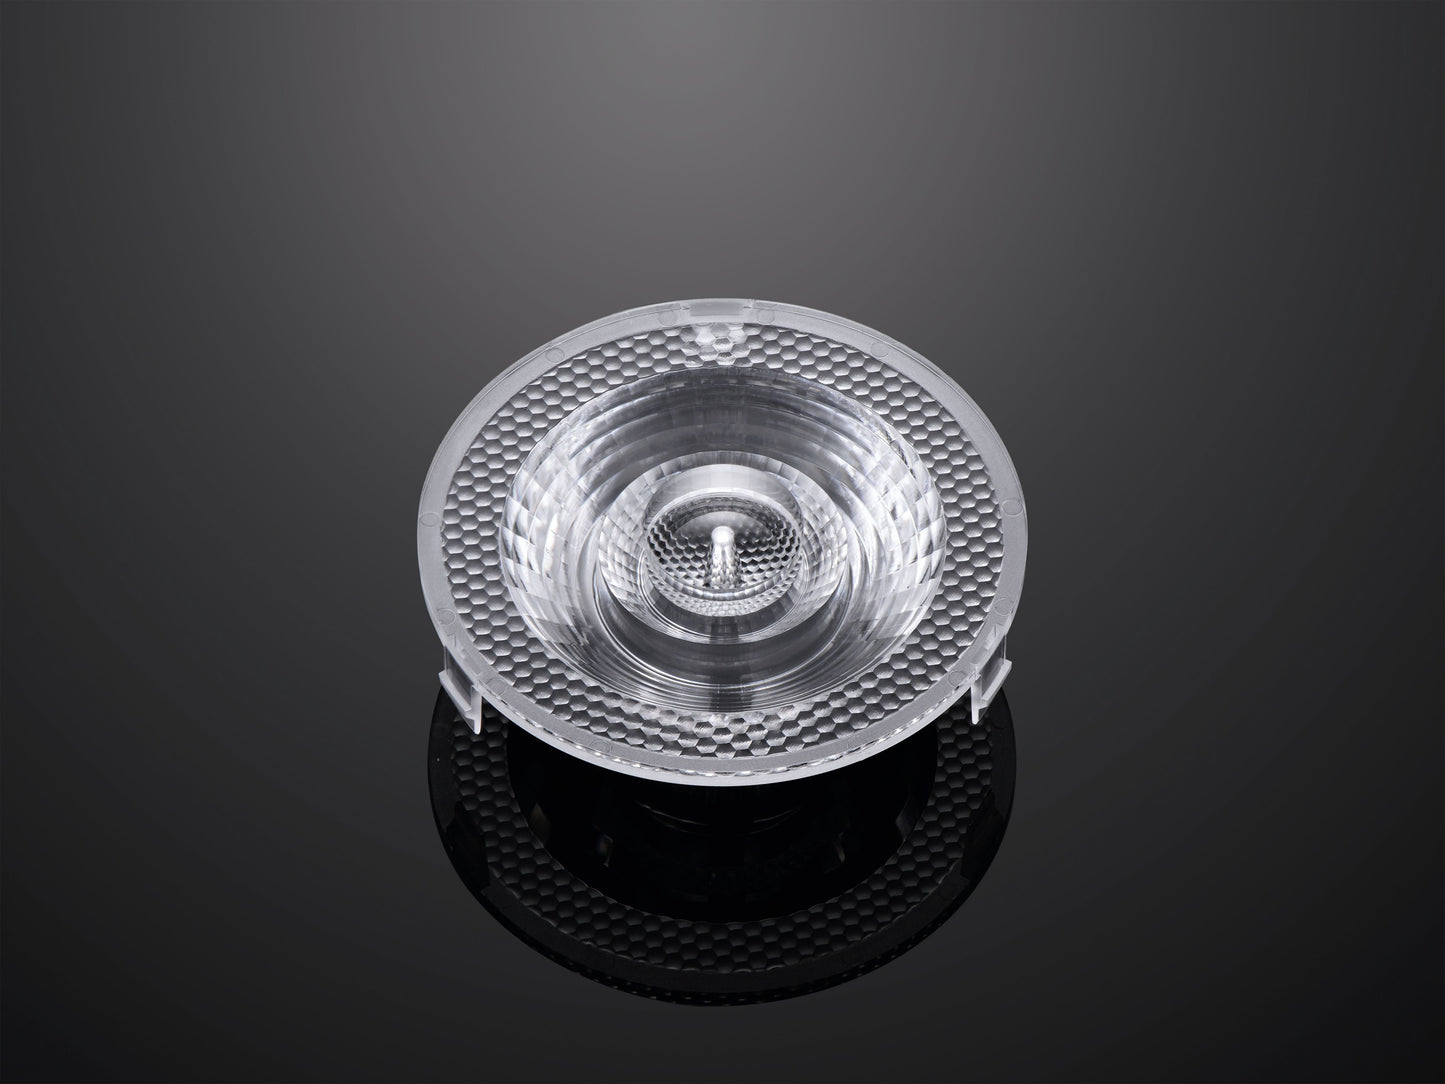 Objektiv COB Spotlight Optický objektiv o průměru 76 mm pro komerční osvětlení